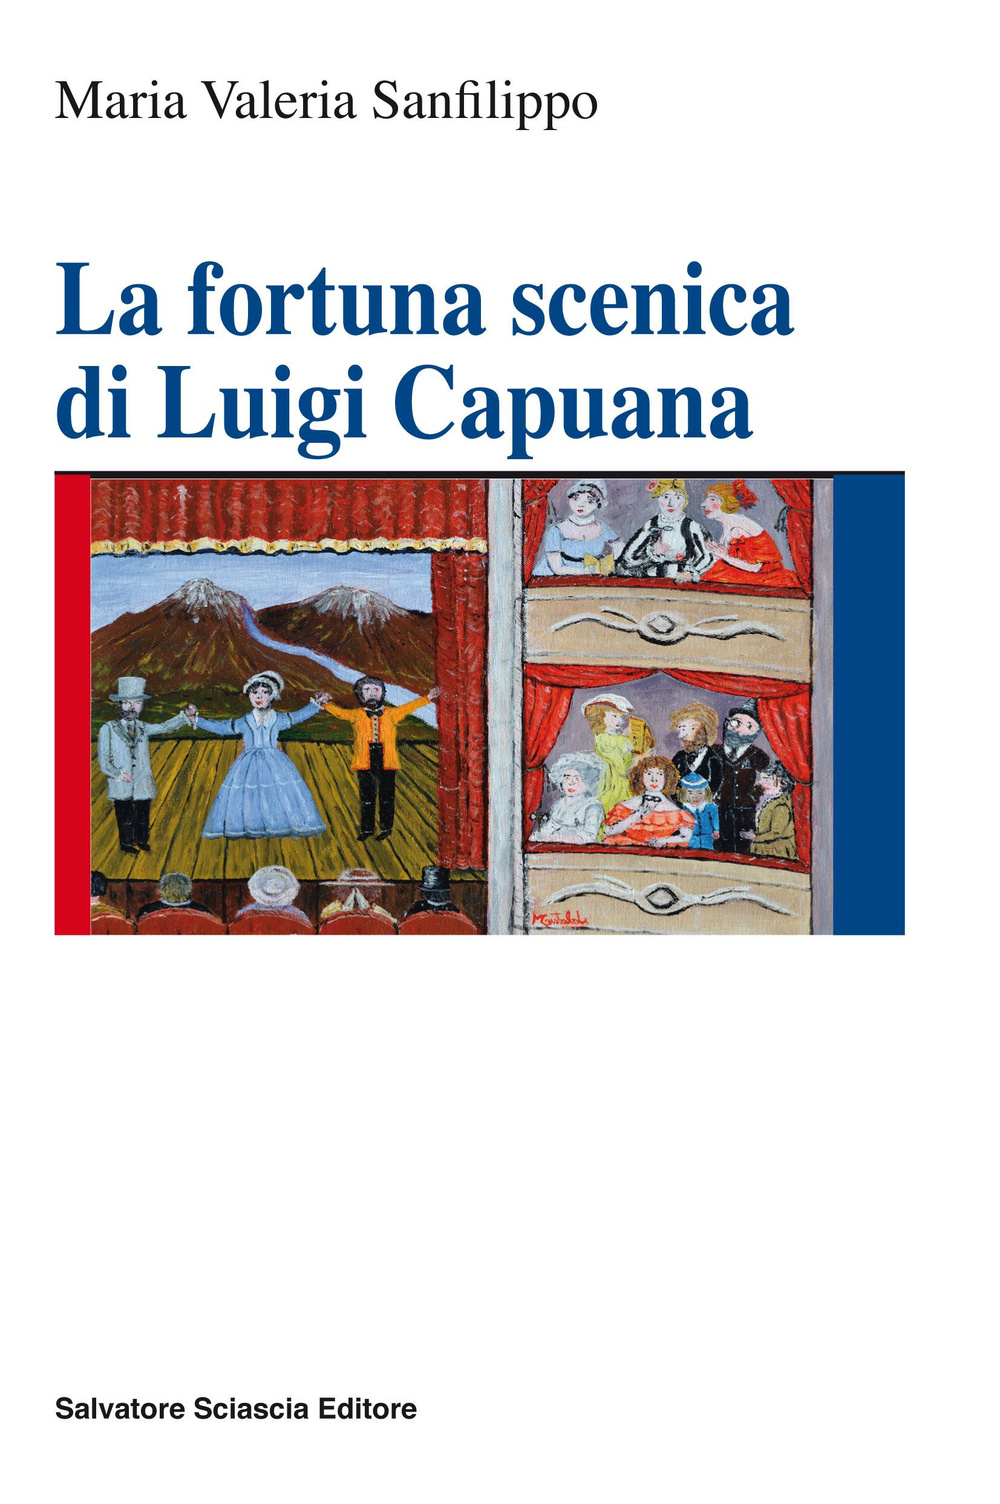 Libri Sanfilippo Maria Valeria - La Fortuna Scenica Di Luigi Capuana NUOVO SIGILLATO, EDIZIONE DEL 04/11/2015 SUBITO DISPONIBILE